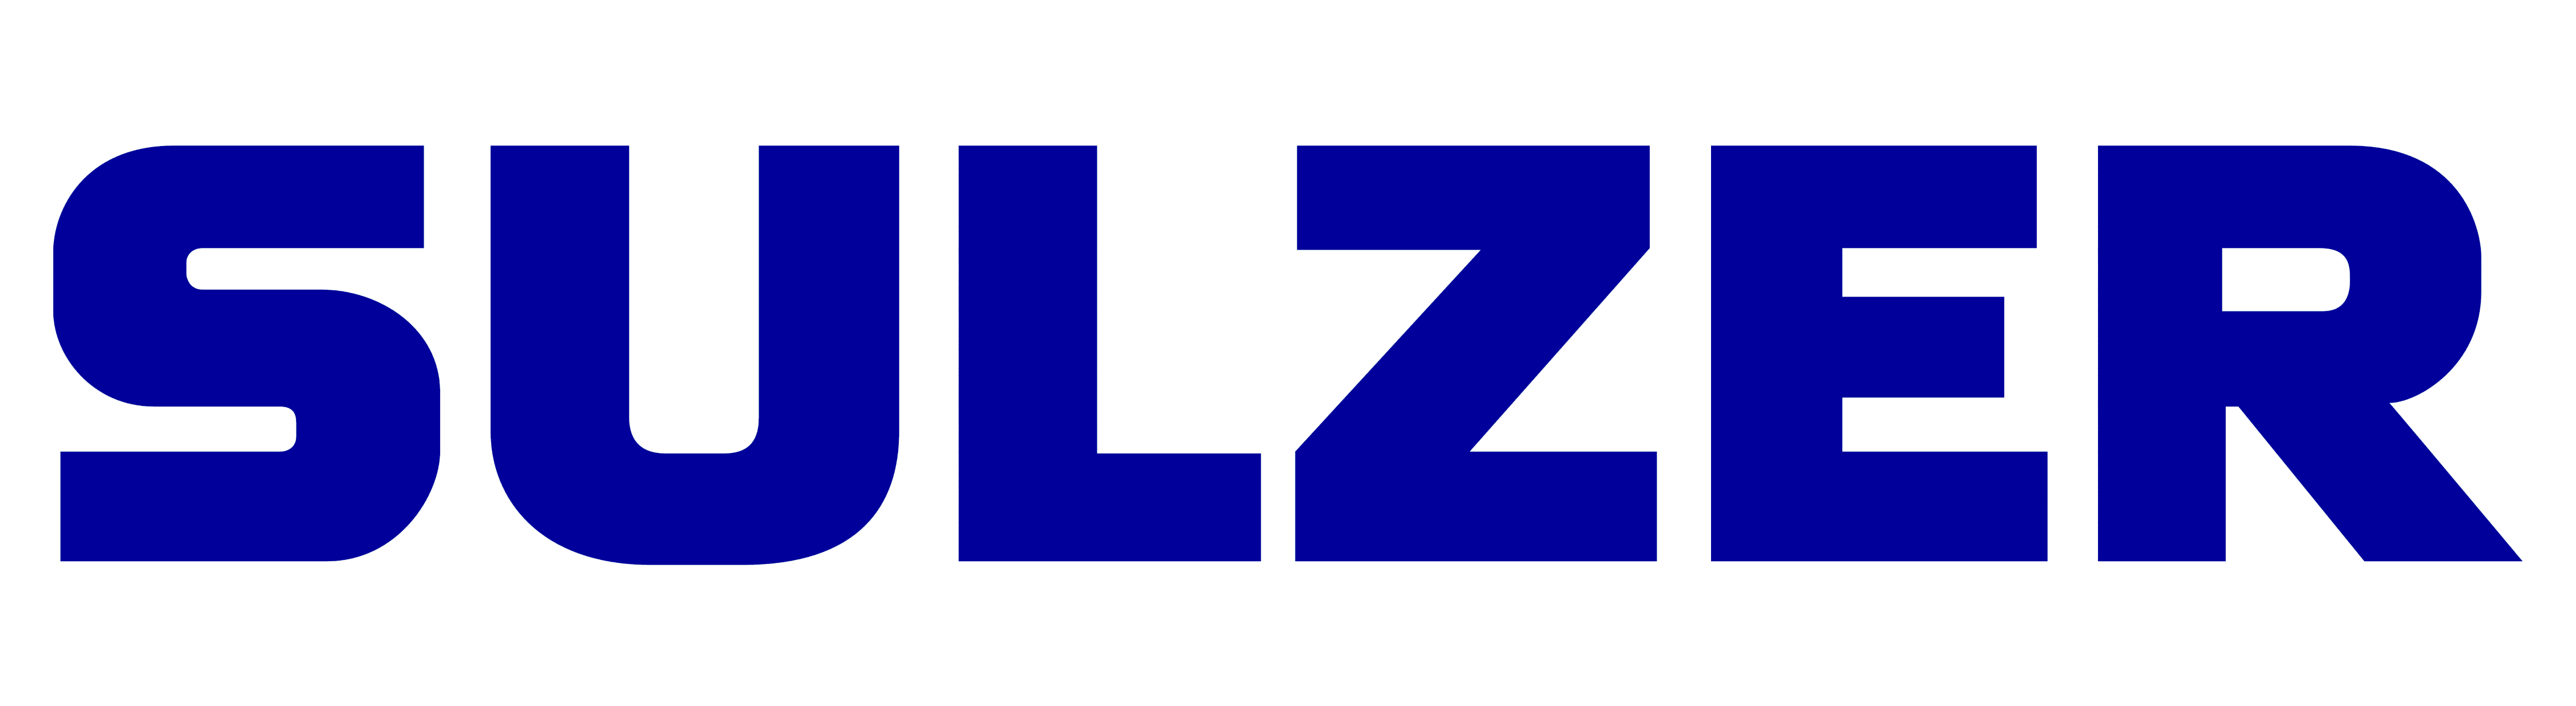 Sulzer Brand Logo